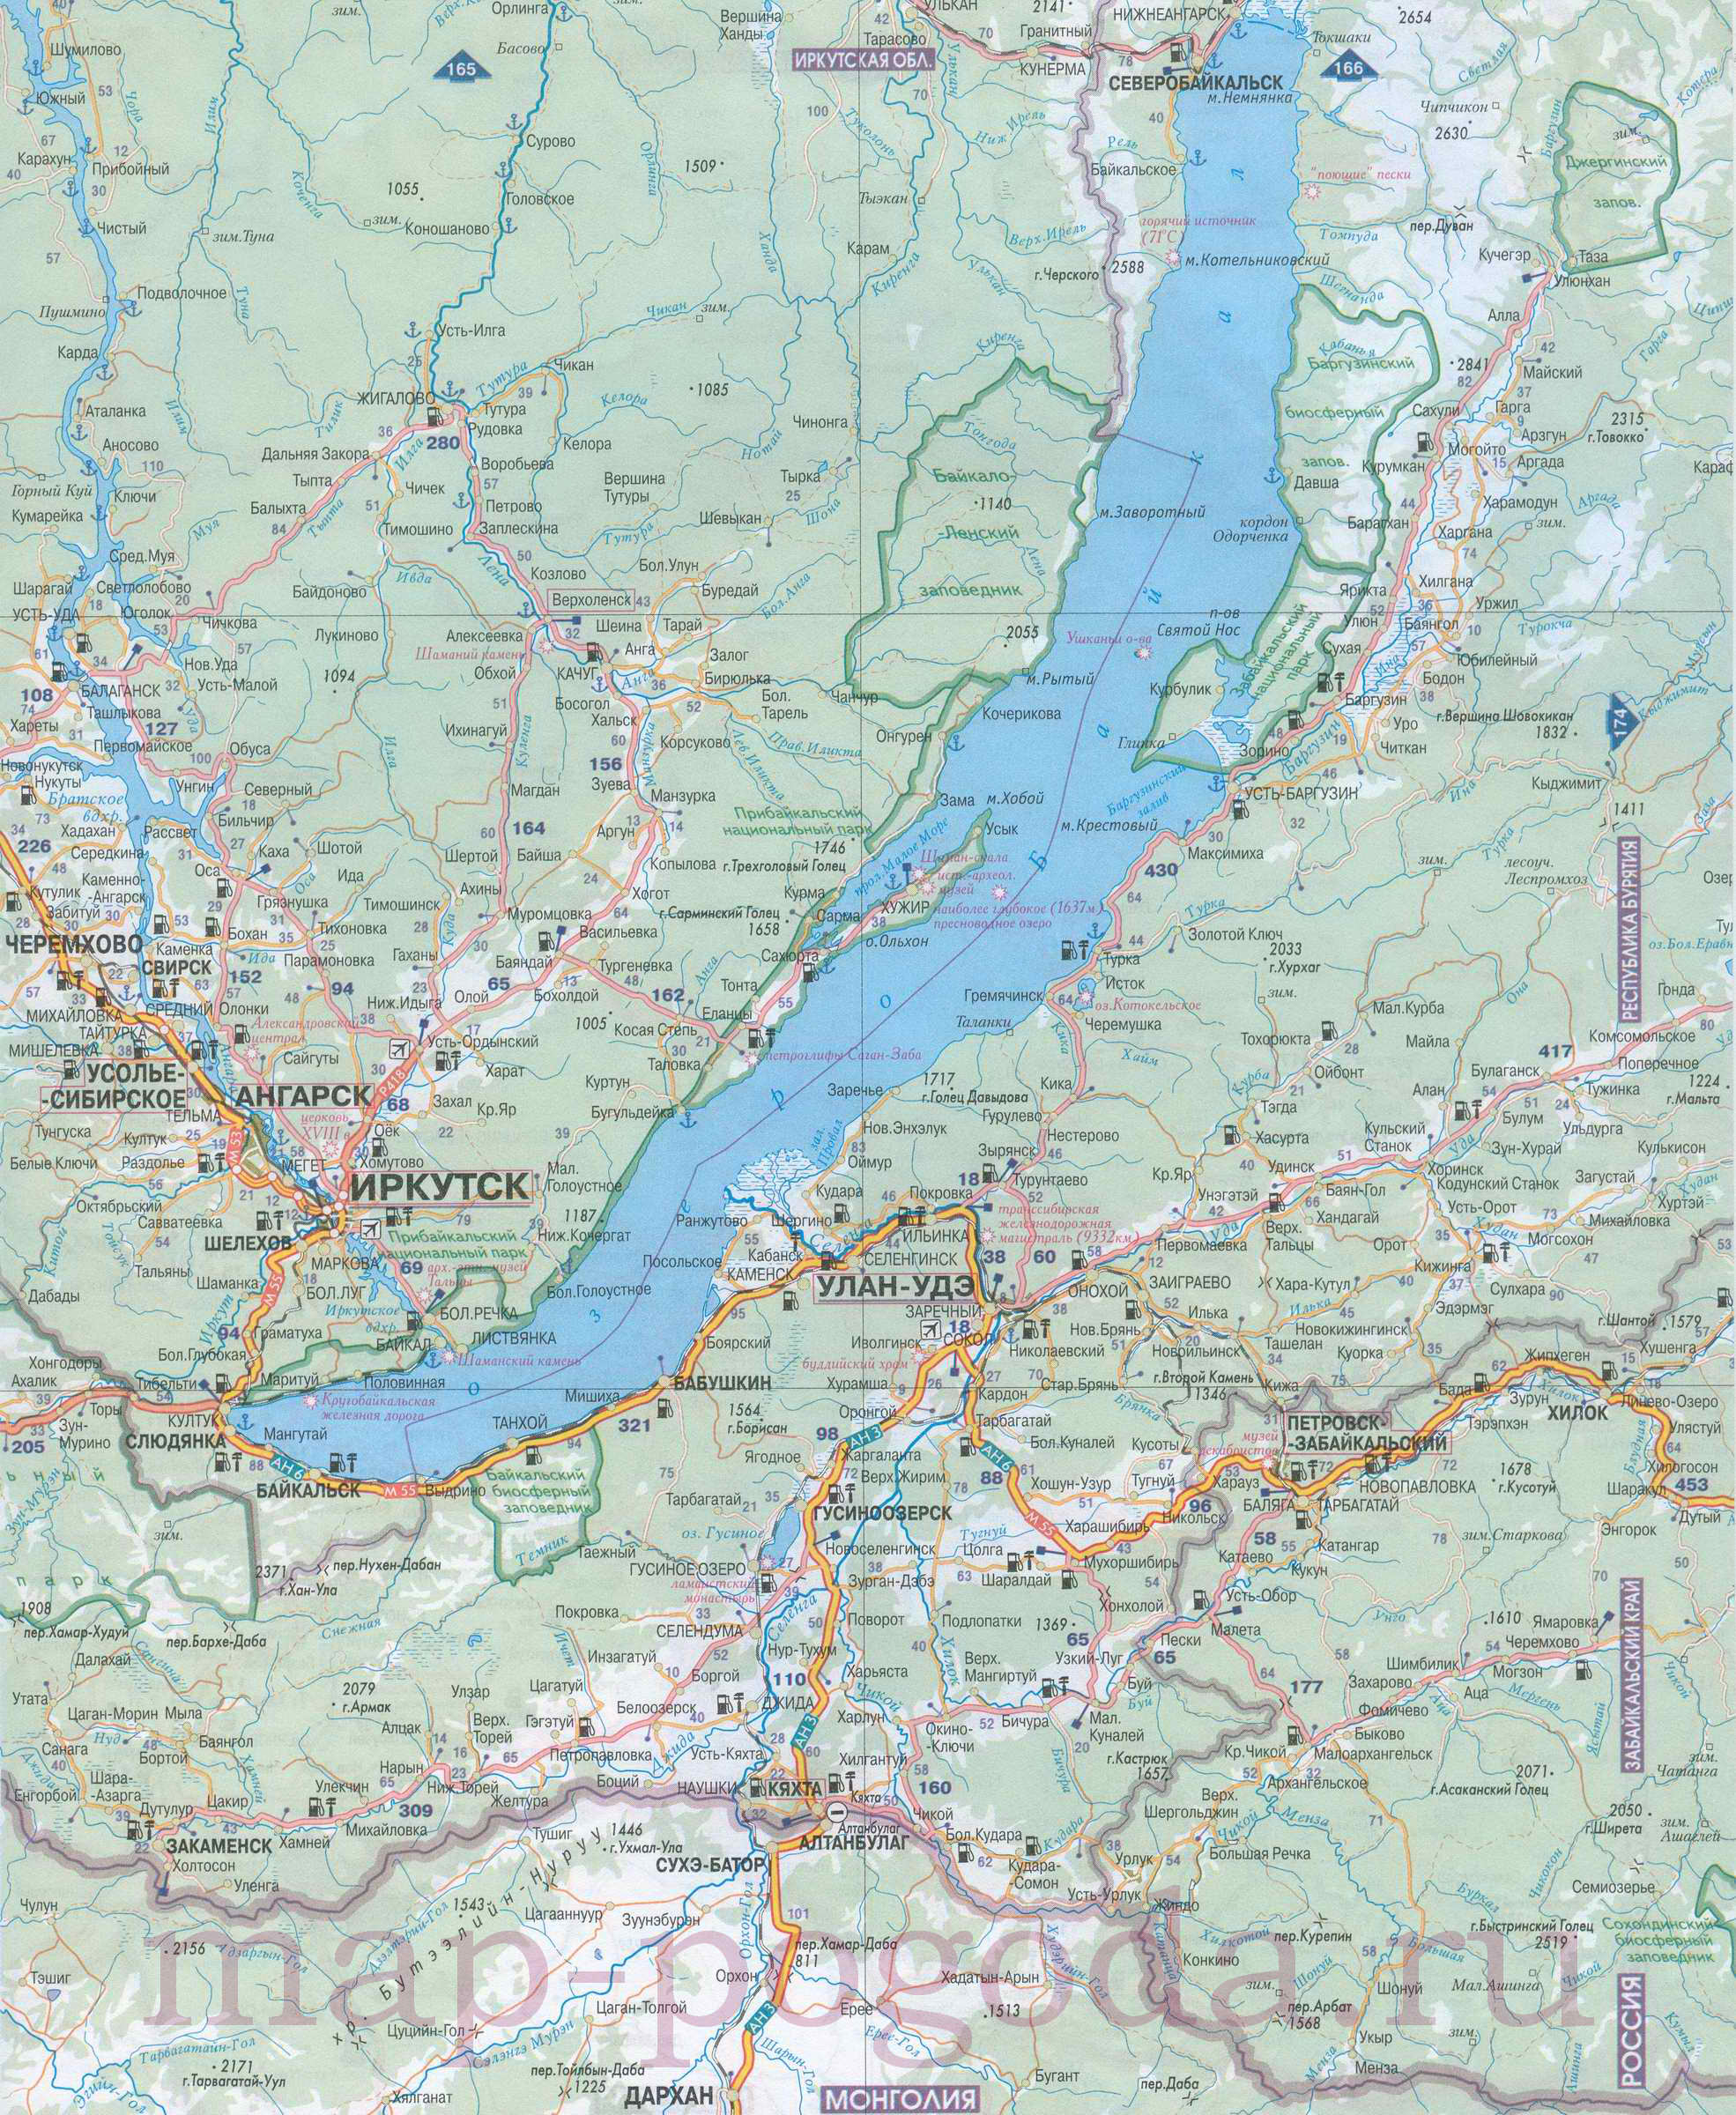 Подробная карта Бурятии. Карта автомобильных дорог республики Бурятия, B0 - 